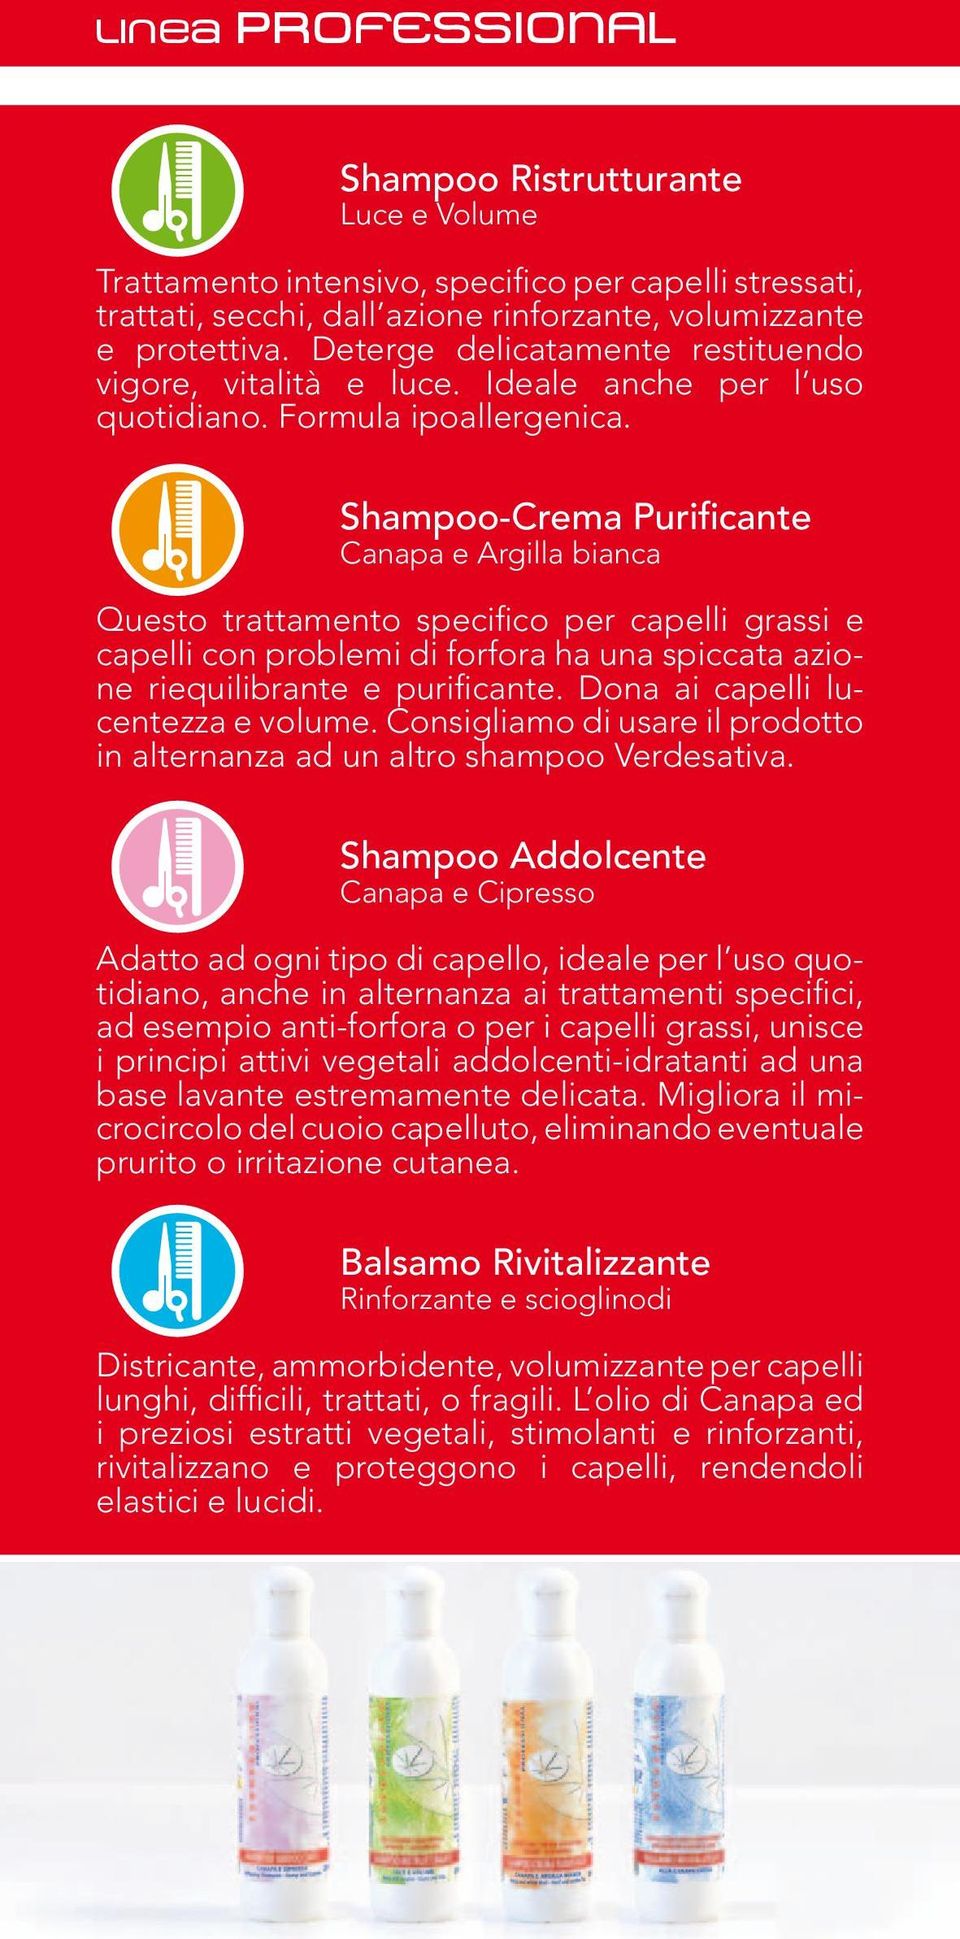 Shampoo-Crema Purificante Canapa e Argilla bianca Questo trattamento specifico per capelli grassi e capelli con problemi di forfora ha una spiccata azione riequilibrante e purificante.